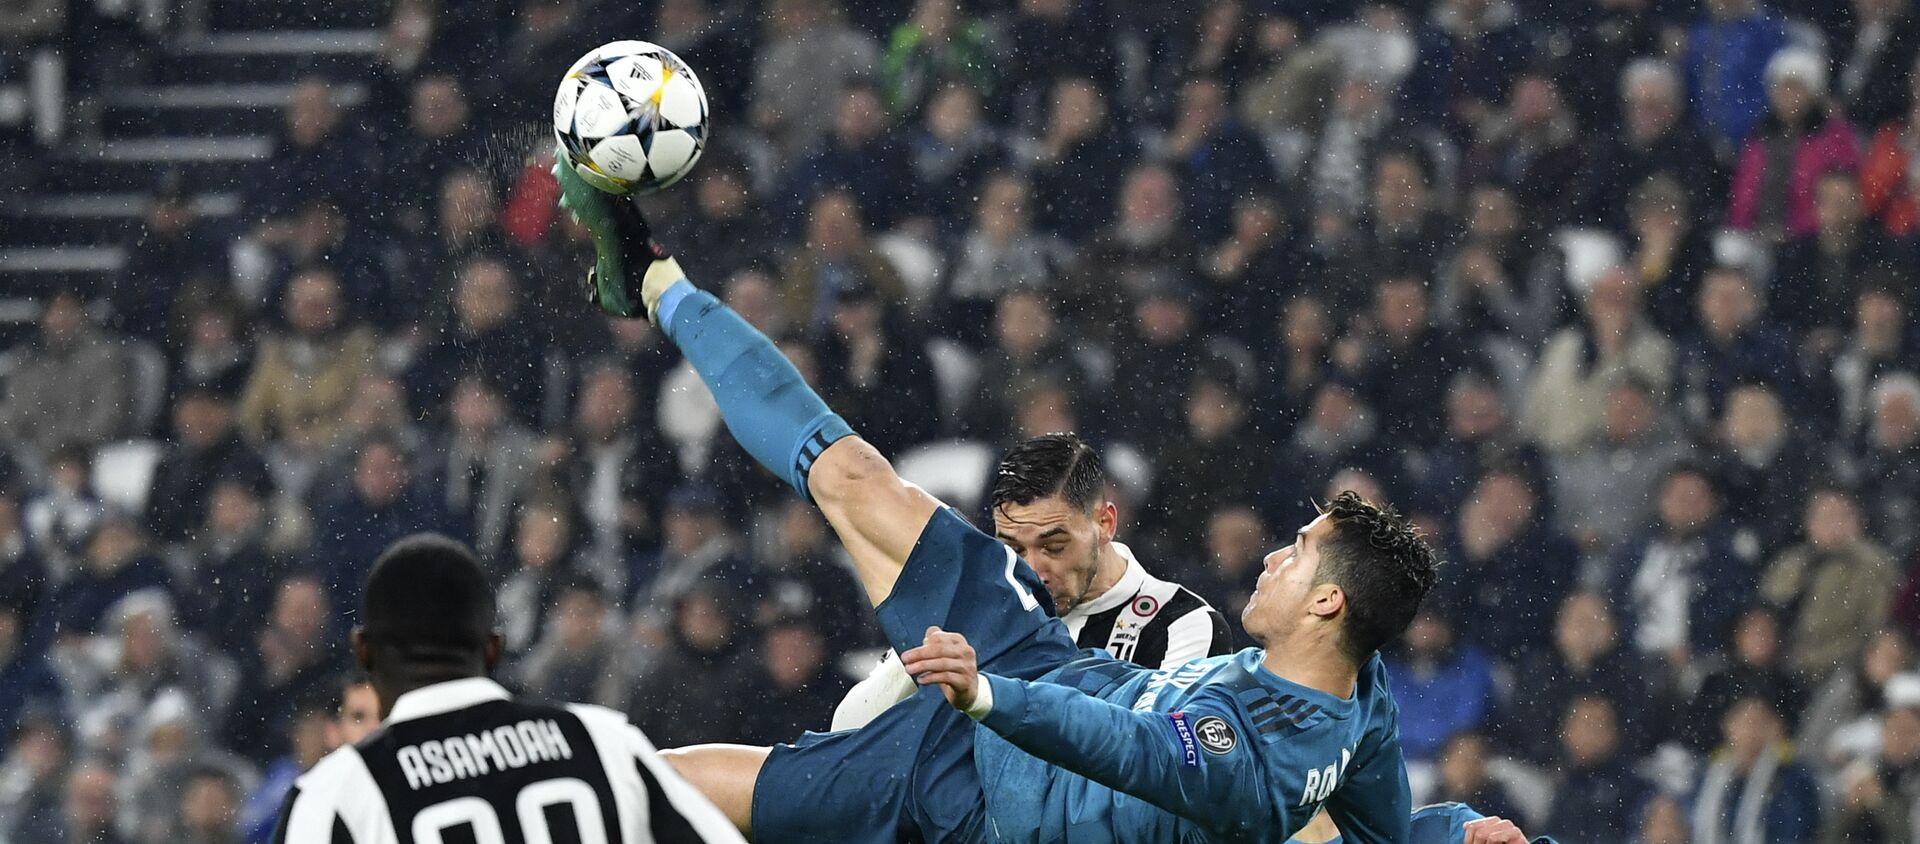 UEFA Şampiyonlar Ligi çeyrek finallerinde Real Madrid'in Juventus'u deplasmanda 3-0 yendiği maça 2 gol 1 asistle damgasını vuran Cristiano Ronaldo'nun ikinci golde rövaşata atarken en az 2.27 metre zıpladığı belirlendi.  - Sputnik Türkiye, 1920, 19.04.2021